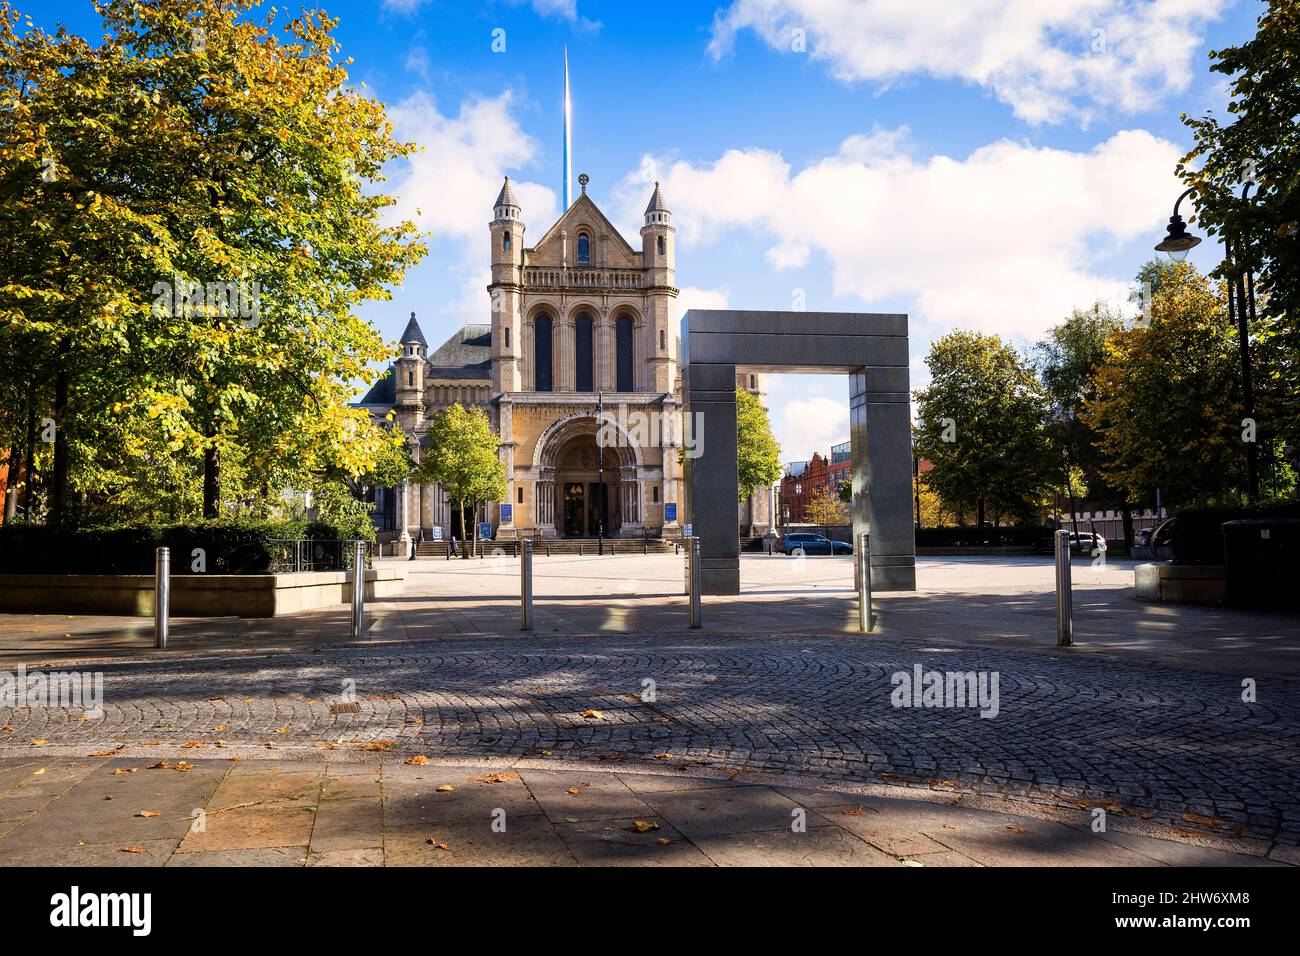 La place des écrivains et la cathédrale de l'église d'Irlande de Belfast, Belfast, Irlande du Nord Banque D'Images